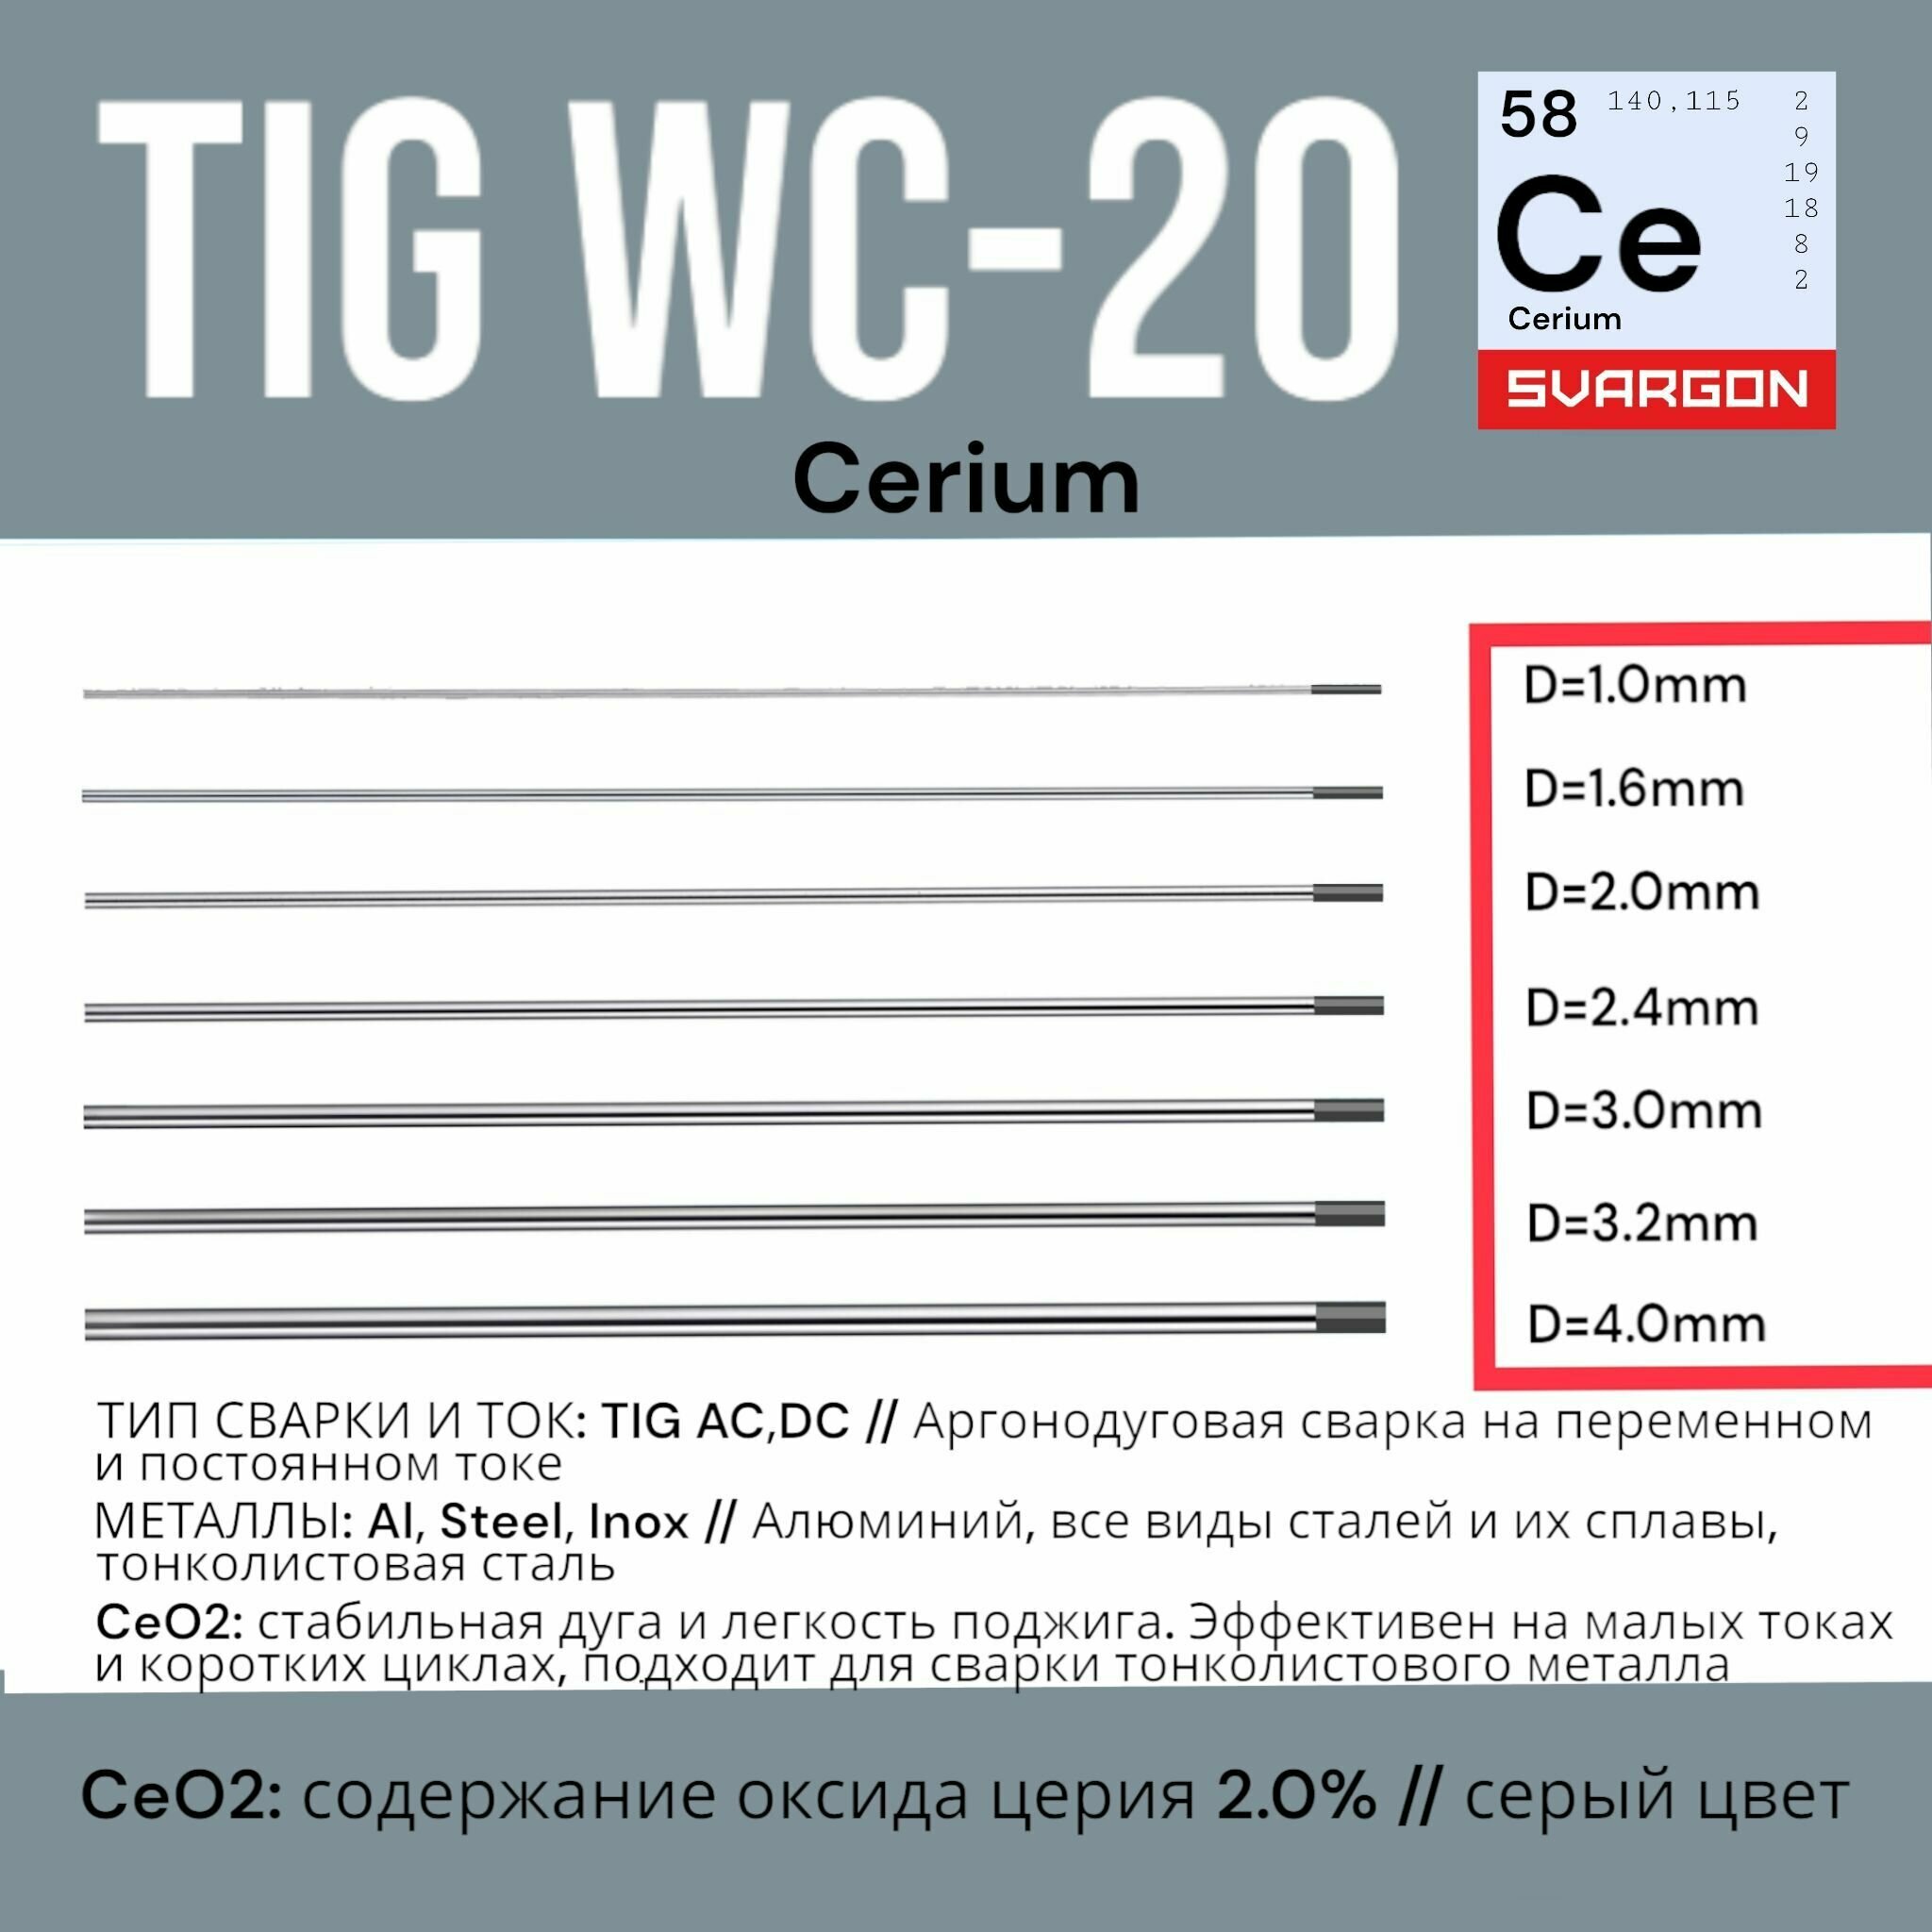 Вольфрамовые сварочные электроды для аргонодуговой сварки SVARGON TIG WC-20 D24мм 3